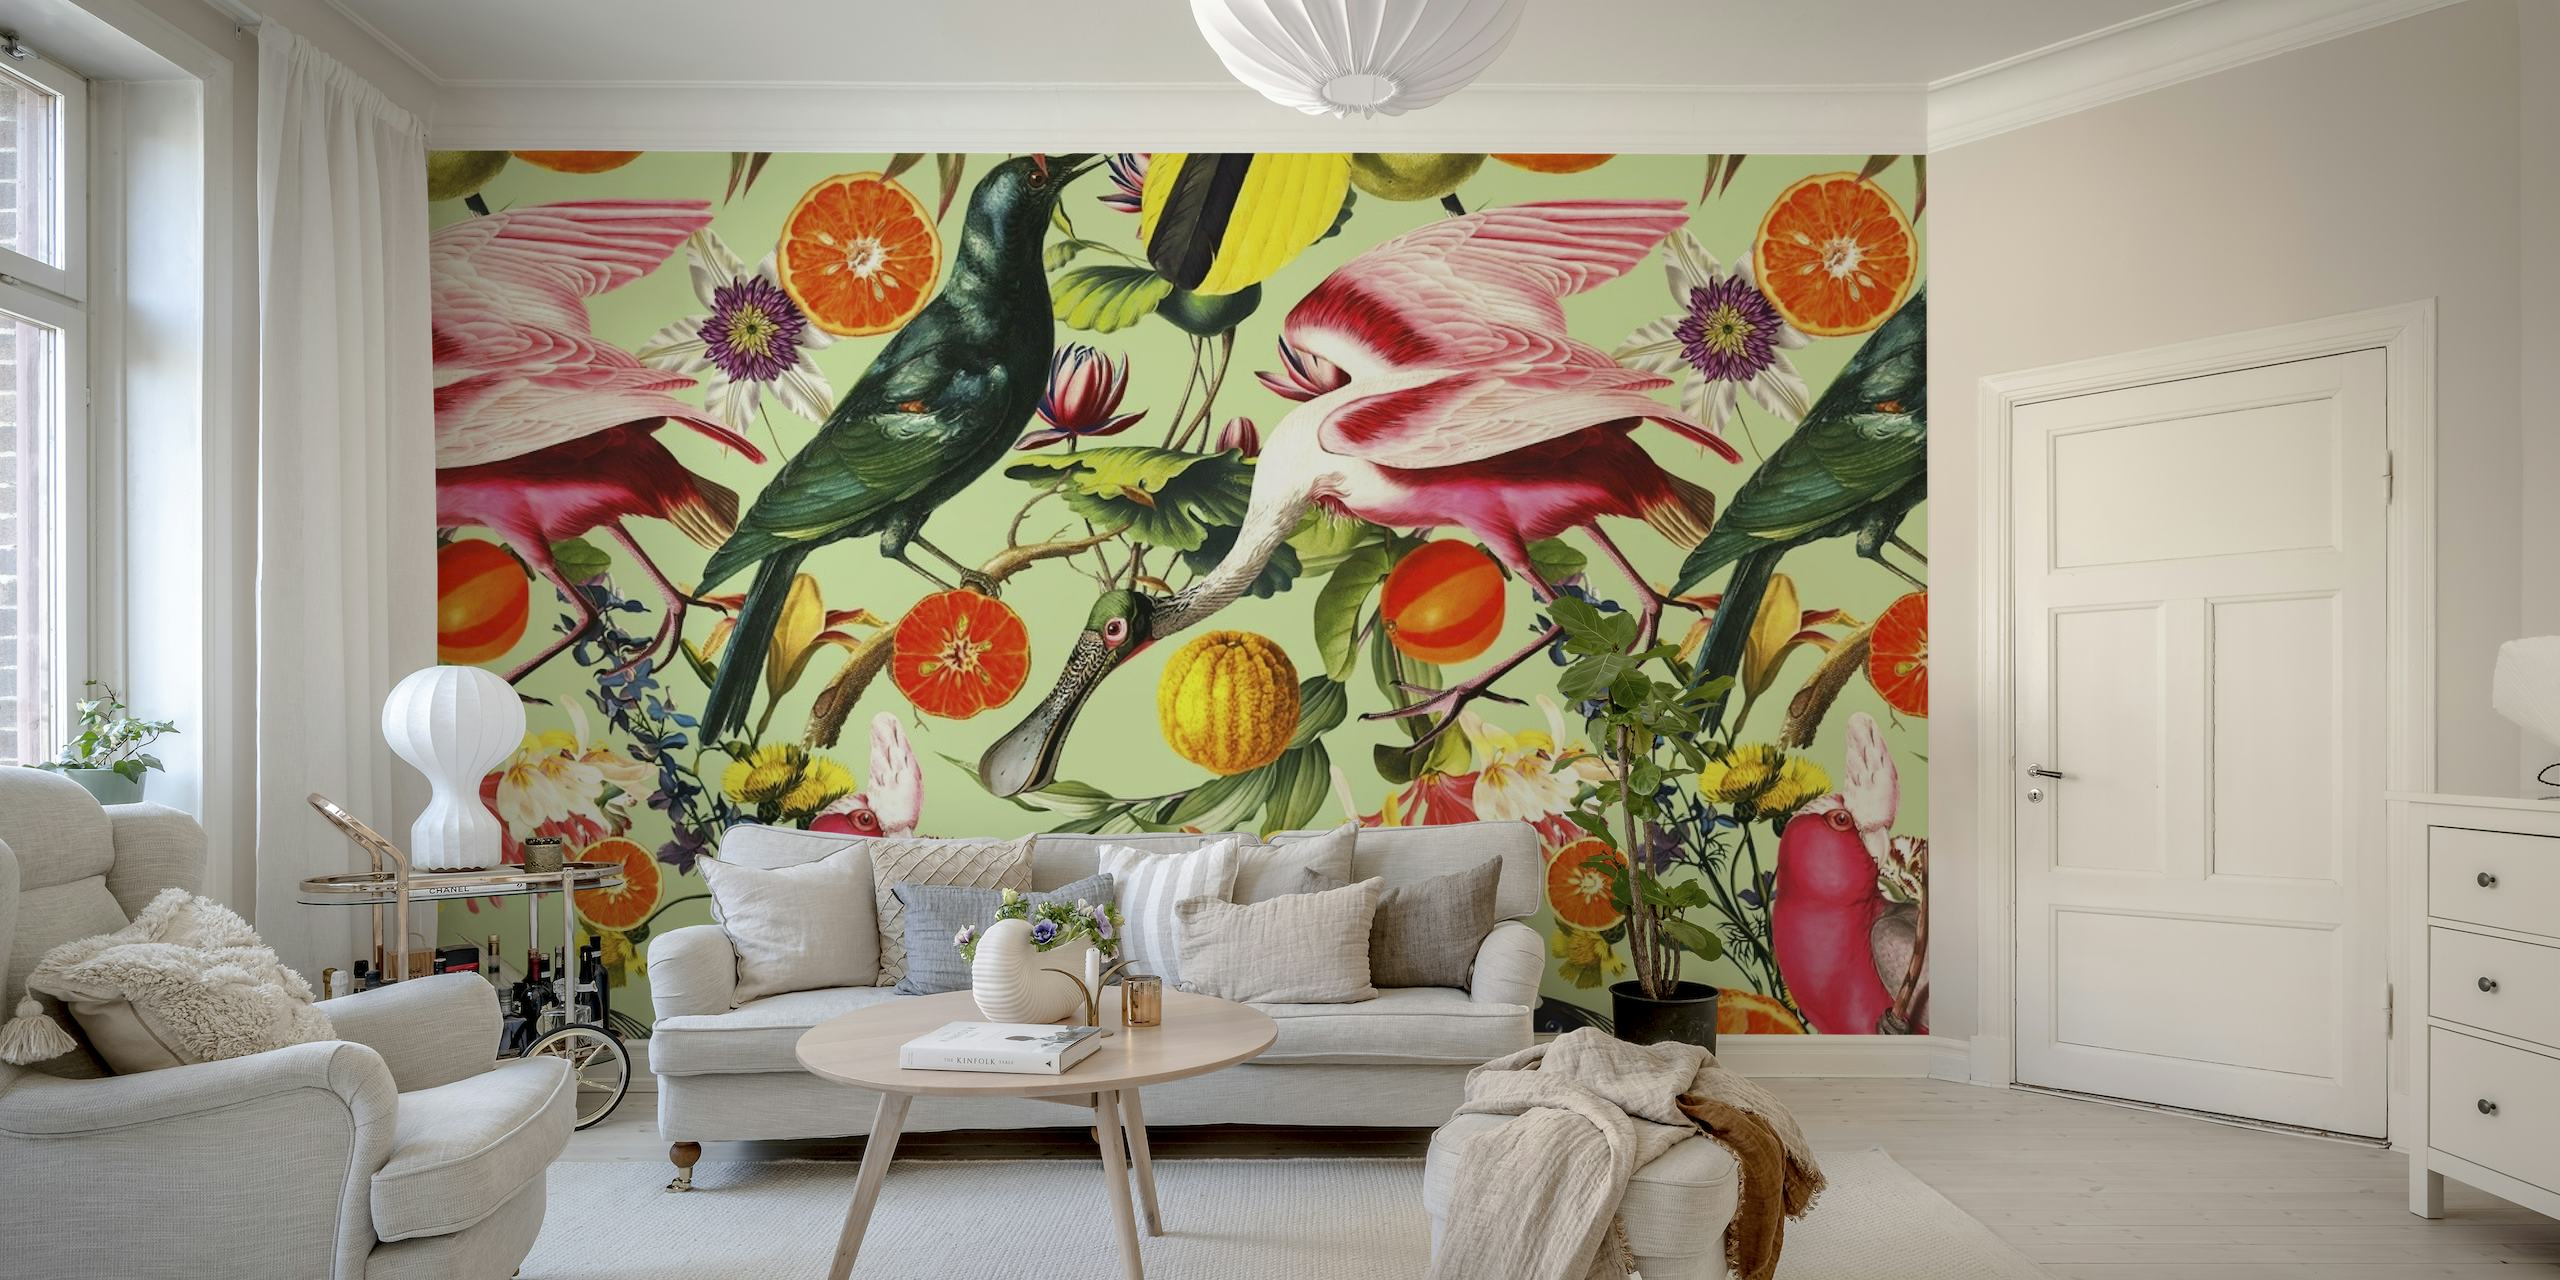 Šareni zidni mural s egzotičnim pticama i živopisnim cvijećem na mirnoj pozadini